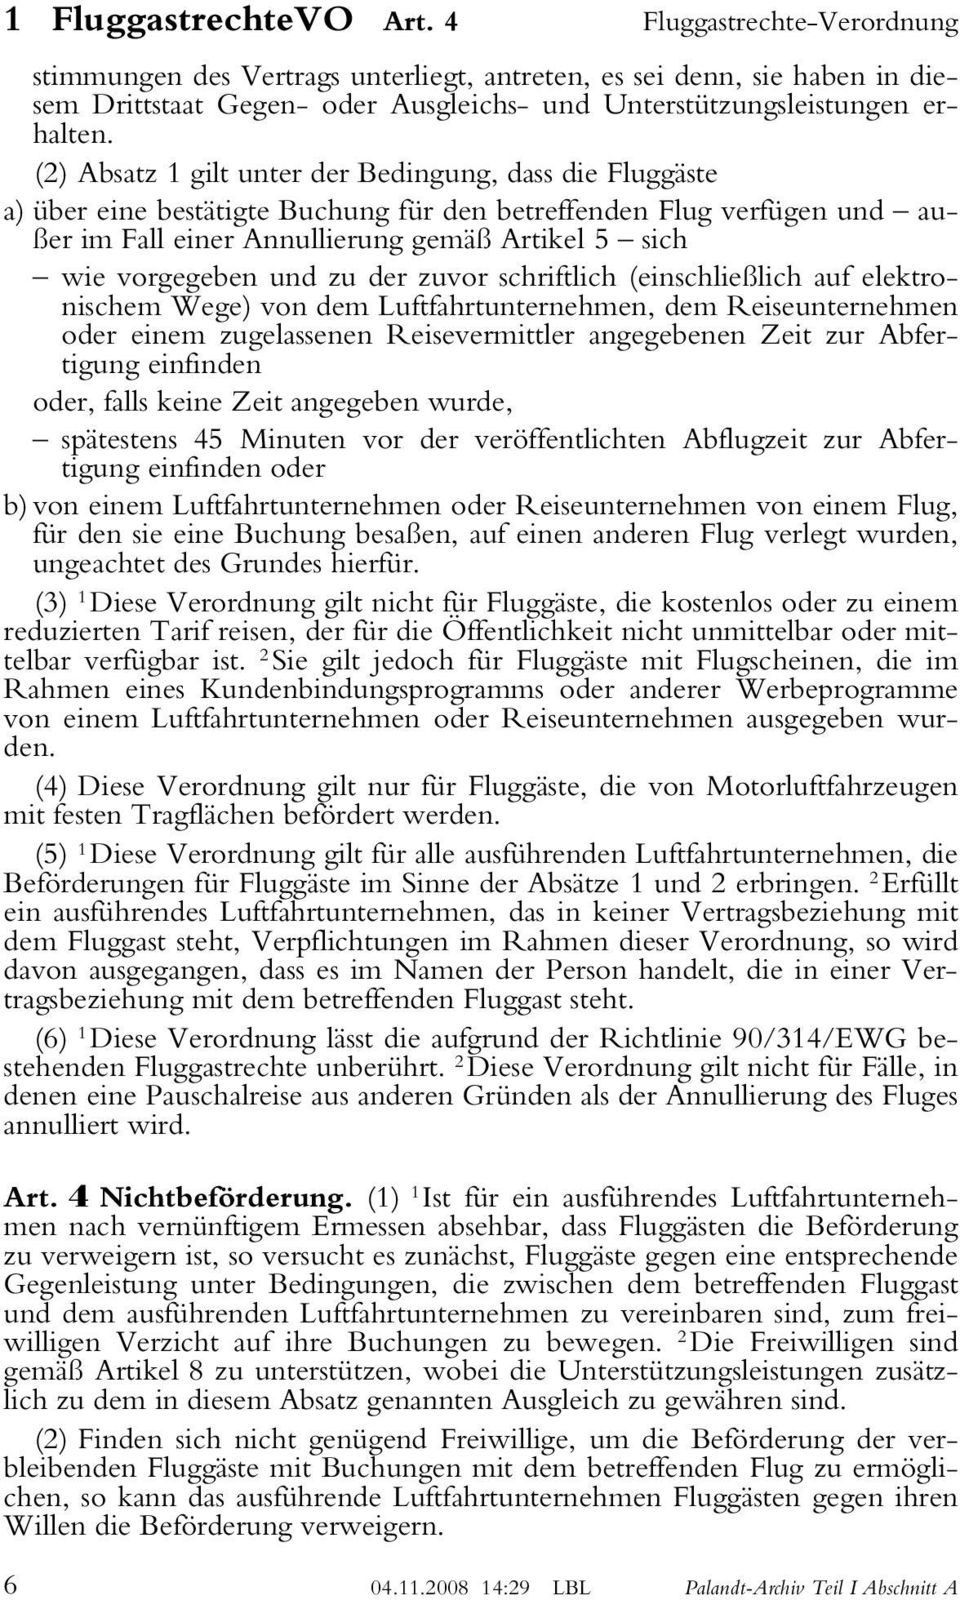 (2) Absatz 1 gilt unter der Bedingung, dass die Fluggäste a) über eine bestätigte Buchung für den betreffenden Flug verfügen und außer im Fall einer Annullierung gemäß Artikel 5 sich wie vorgegeben